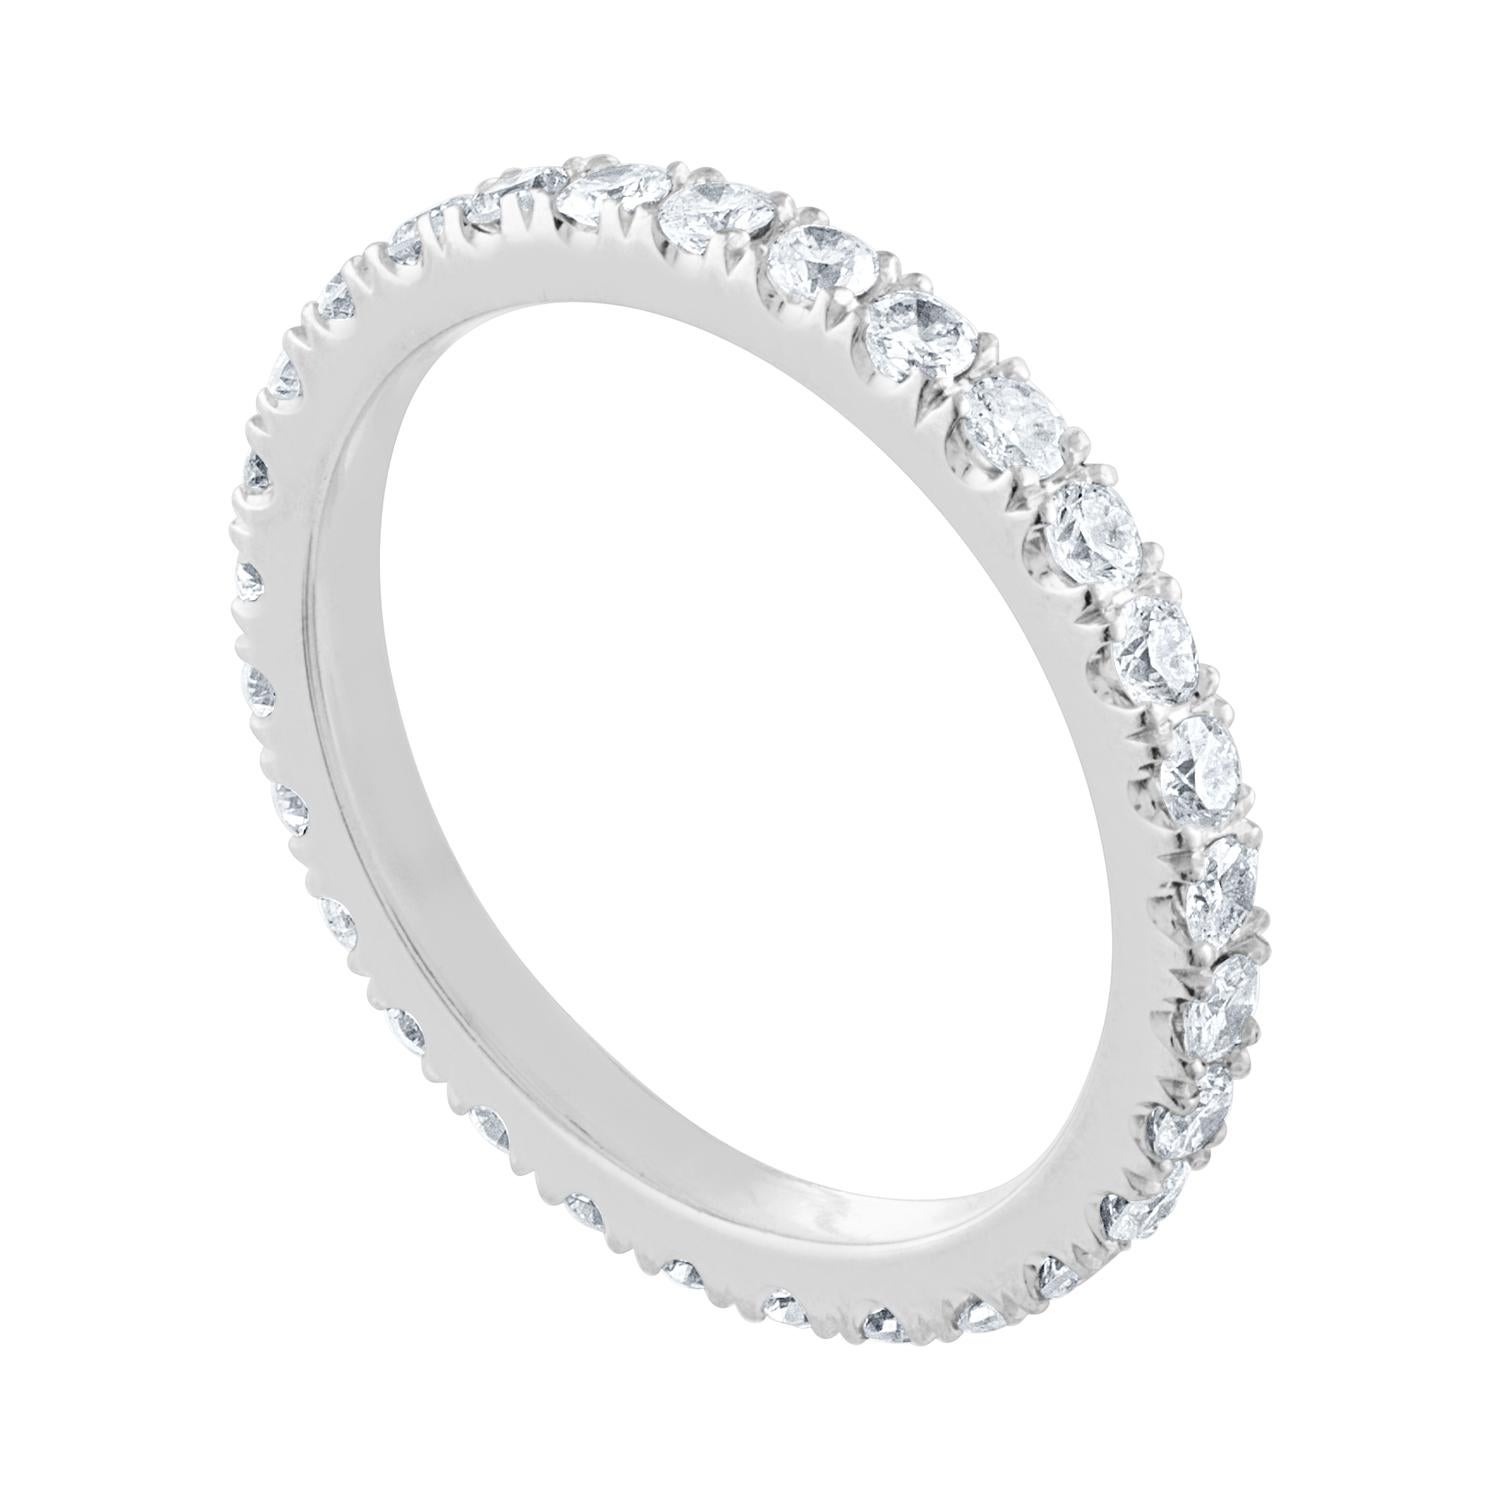 Der Ring ist aus Platin
Es gibt 1,00 Karat in Diamanten G/H SI
Die Diamanten sind rund und brillant
Der Ring wiegt 3,0 Gramm
Der Ring ist eine Größe 6,00, nicht sizable.